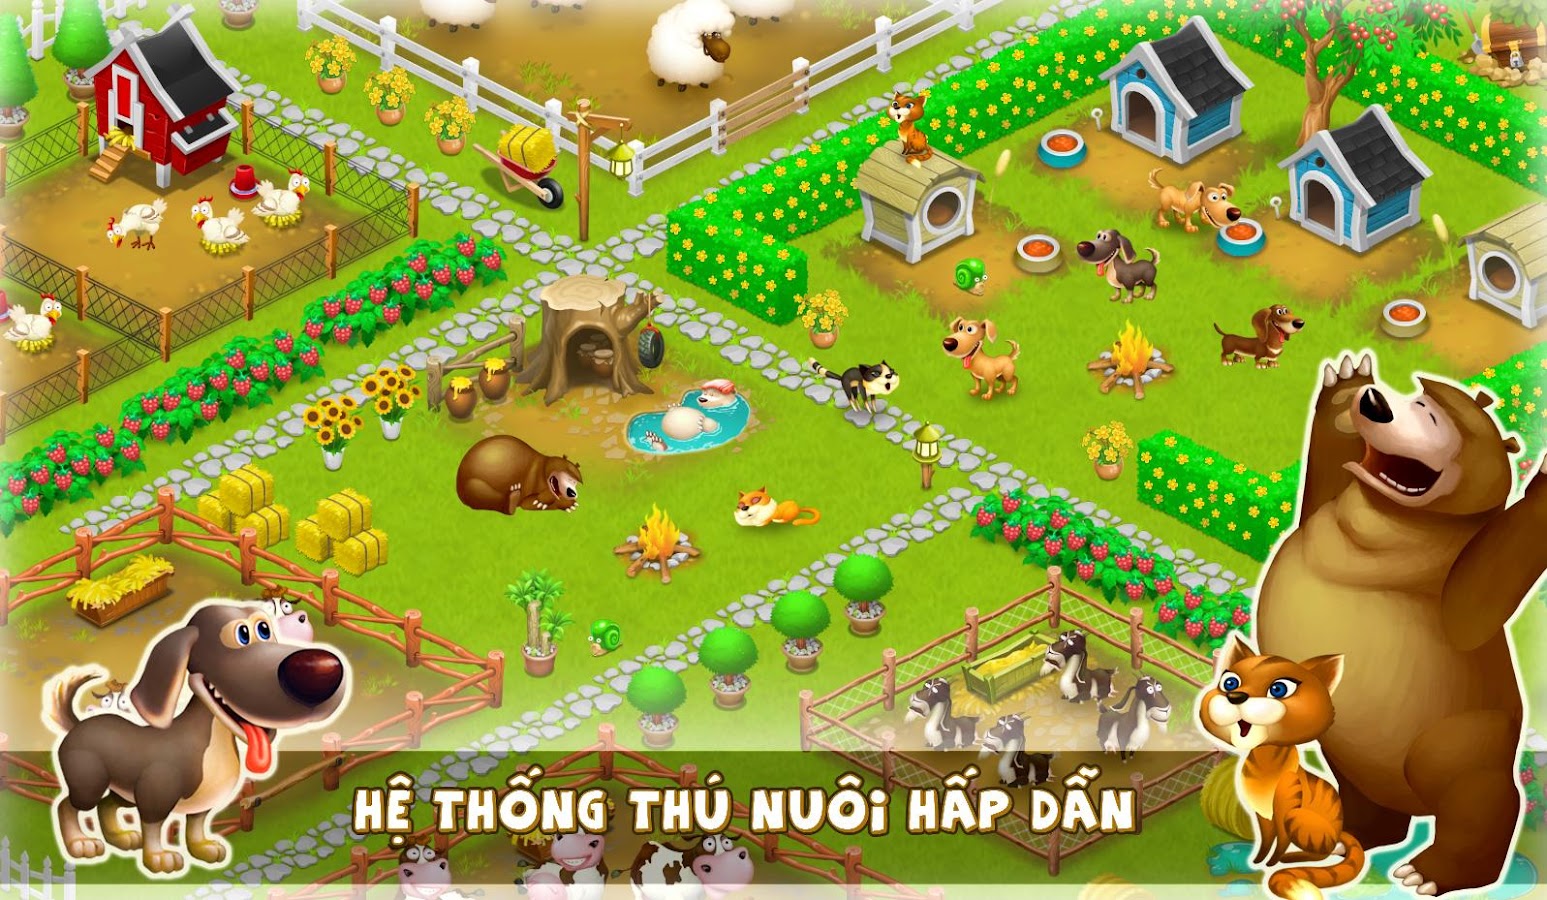 Tai Farmery Nong Trai Game Farm